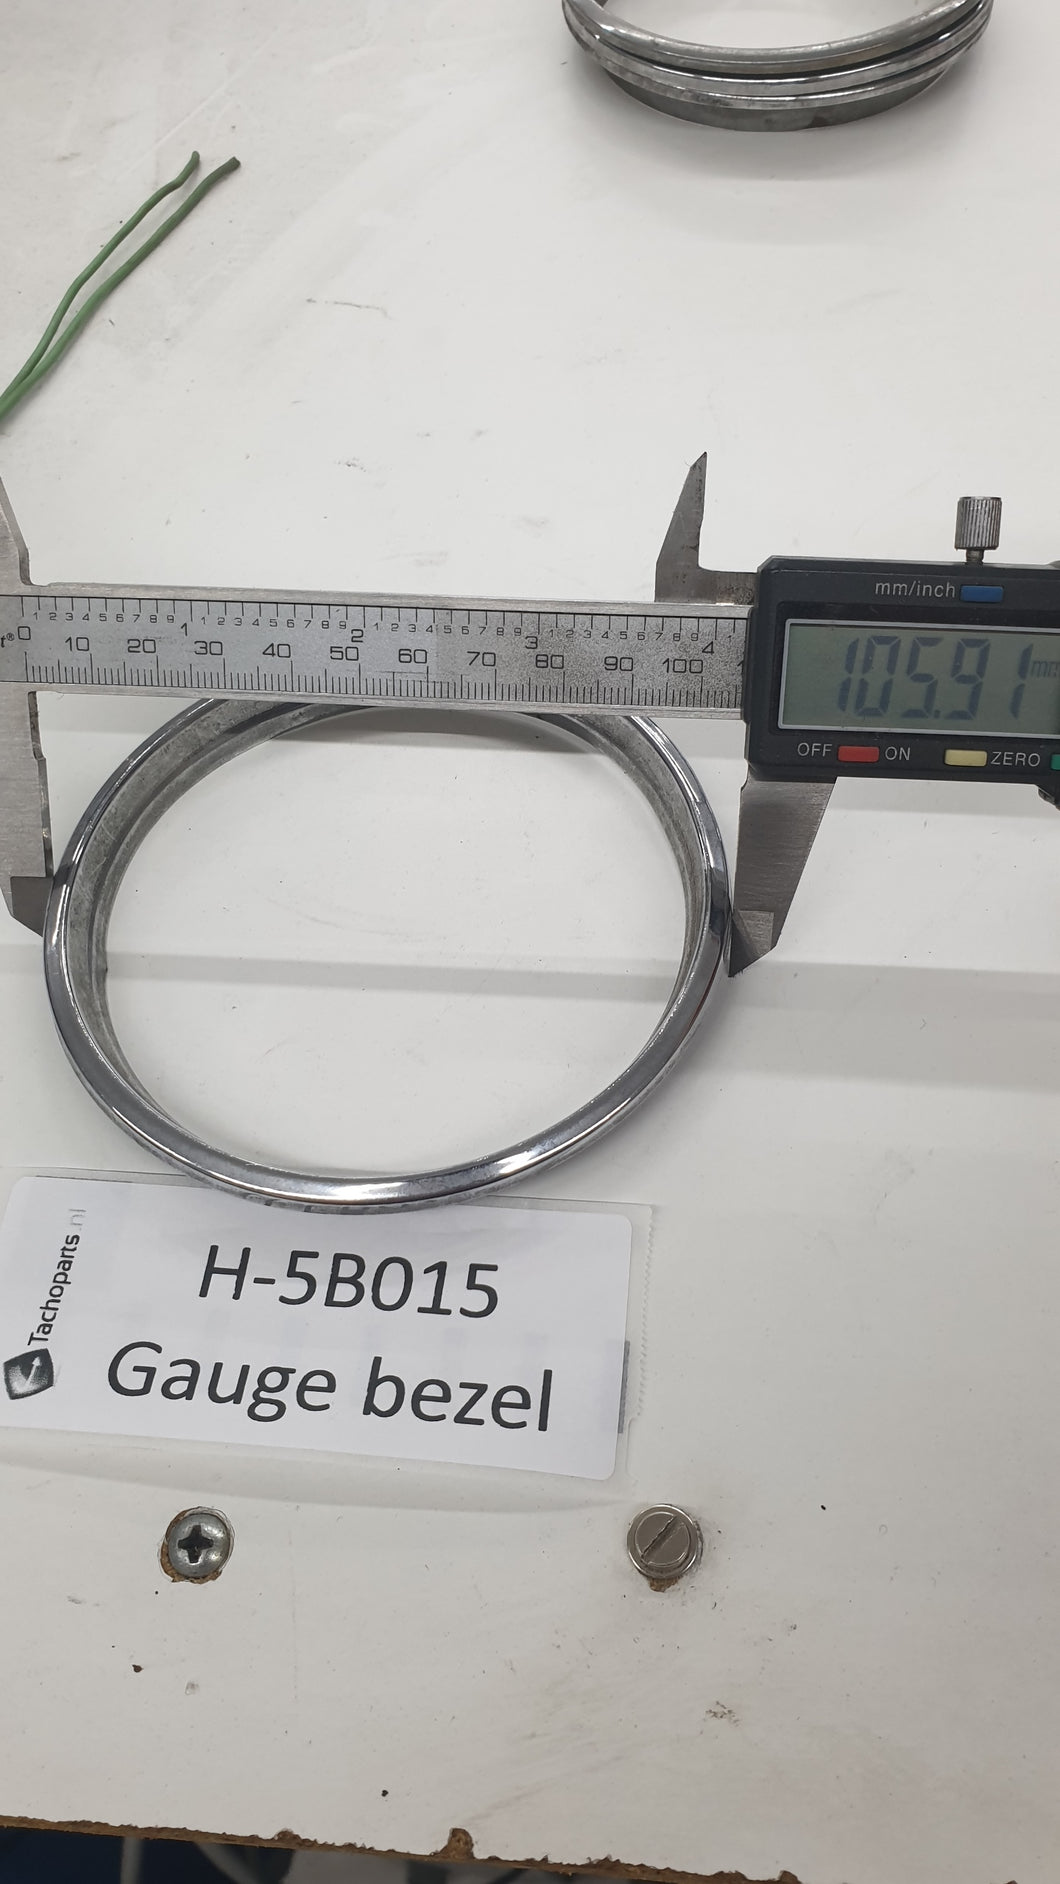 H-5B015 gauge bezel